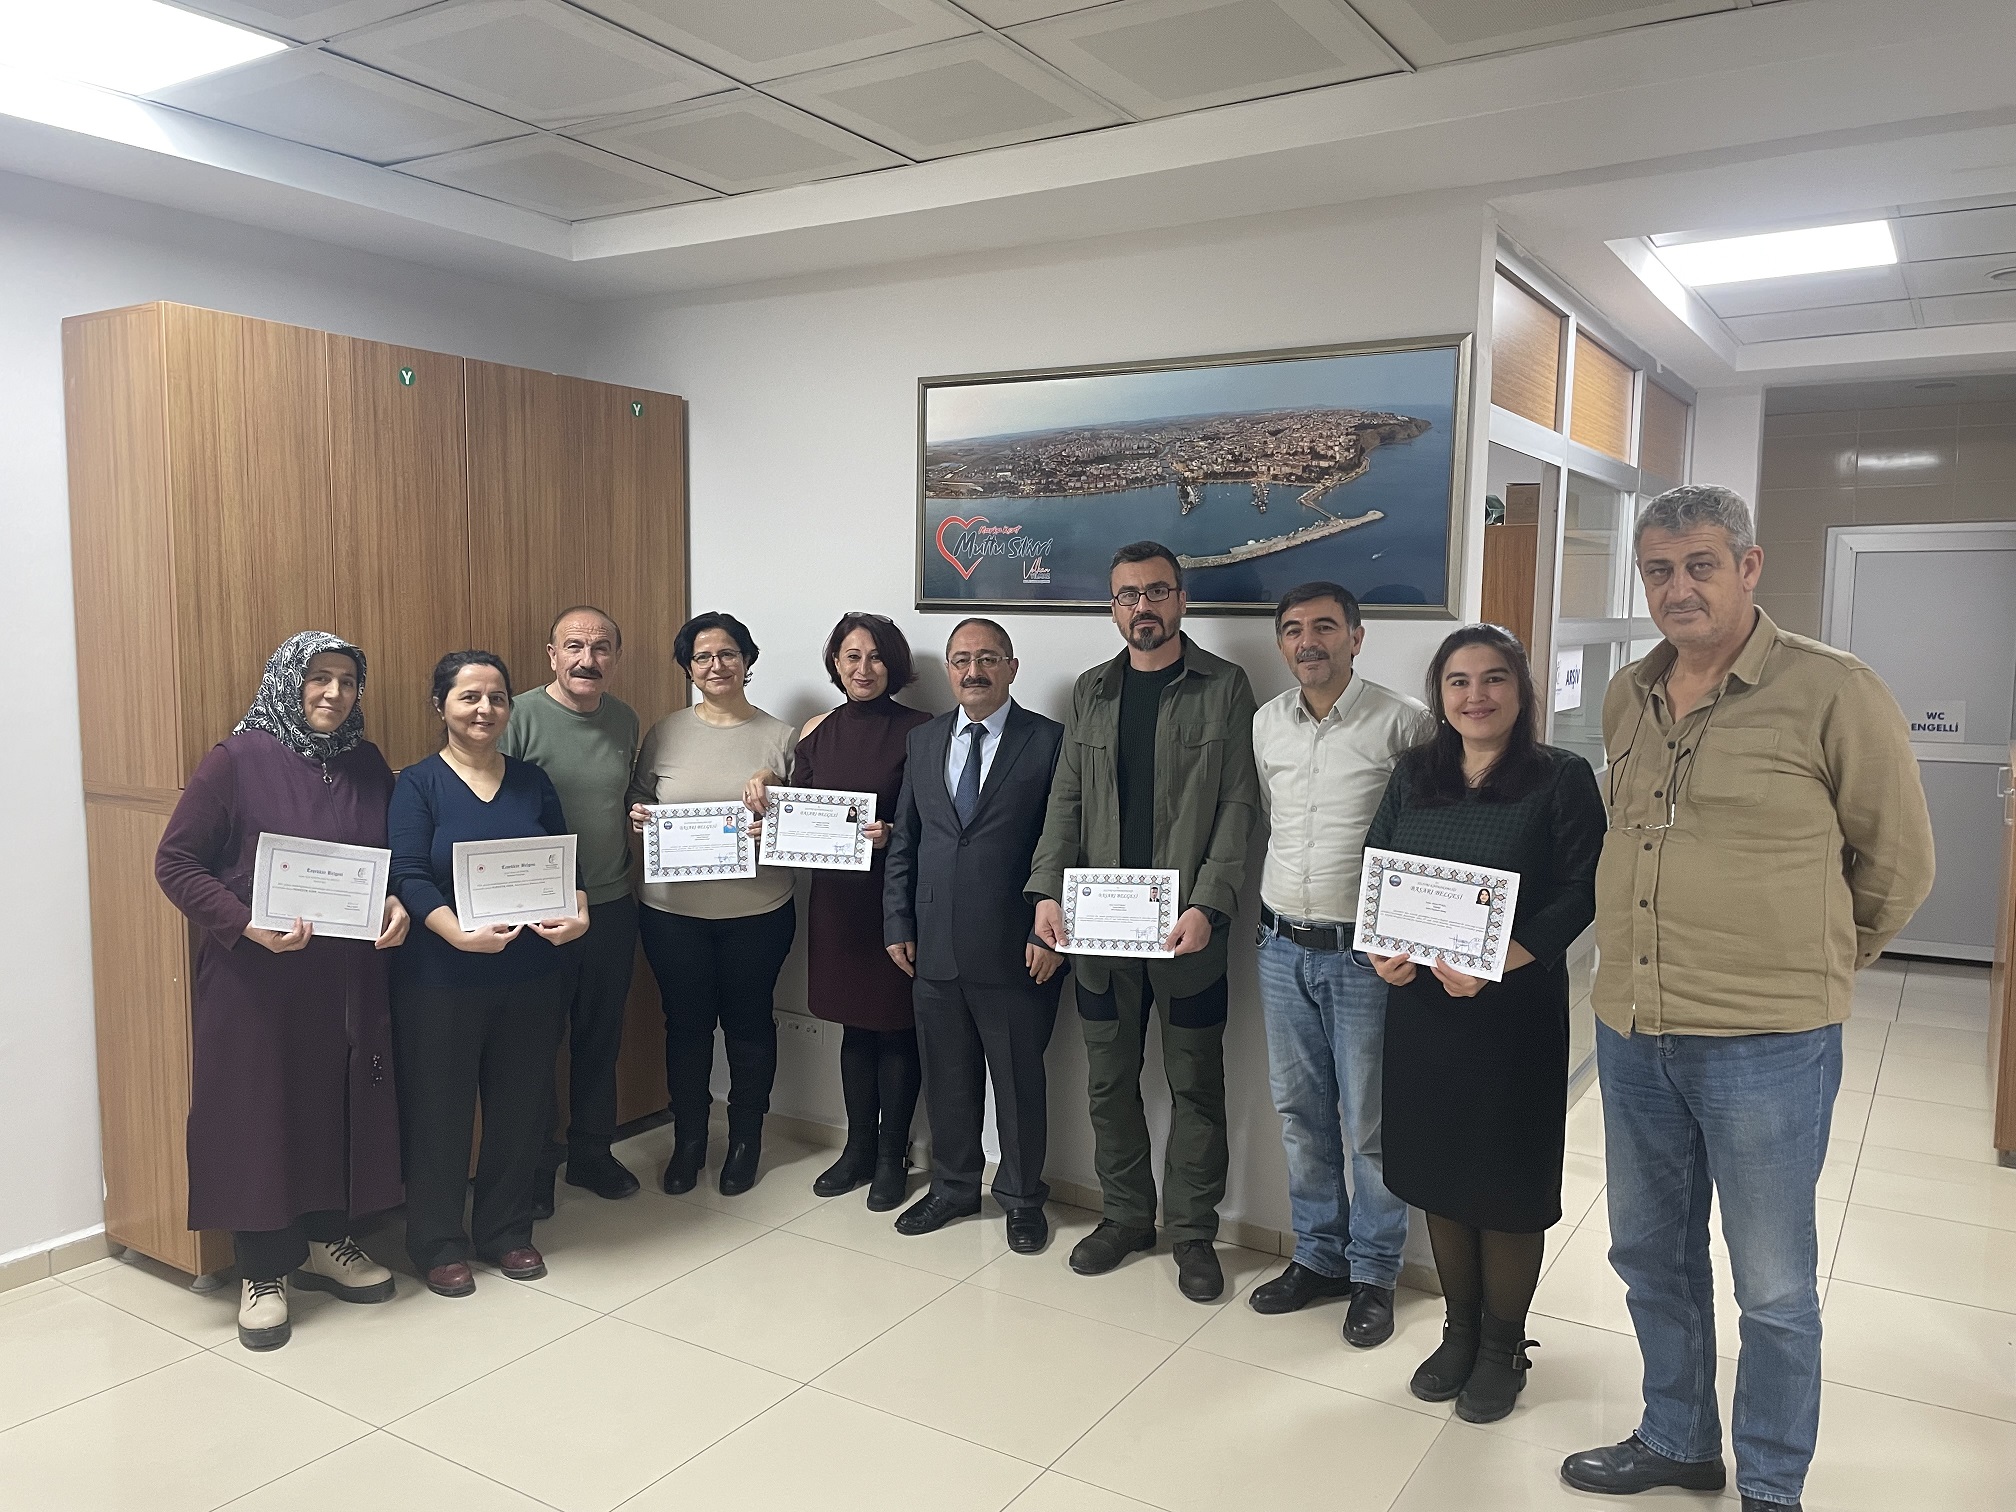 İstanbul Kadastro Müdürlüğü Çalışanları Başarı Belgesi ile Ödüllendirildi